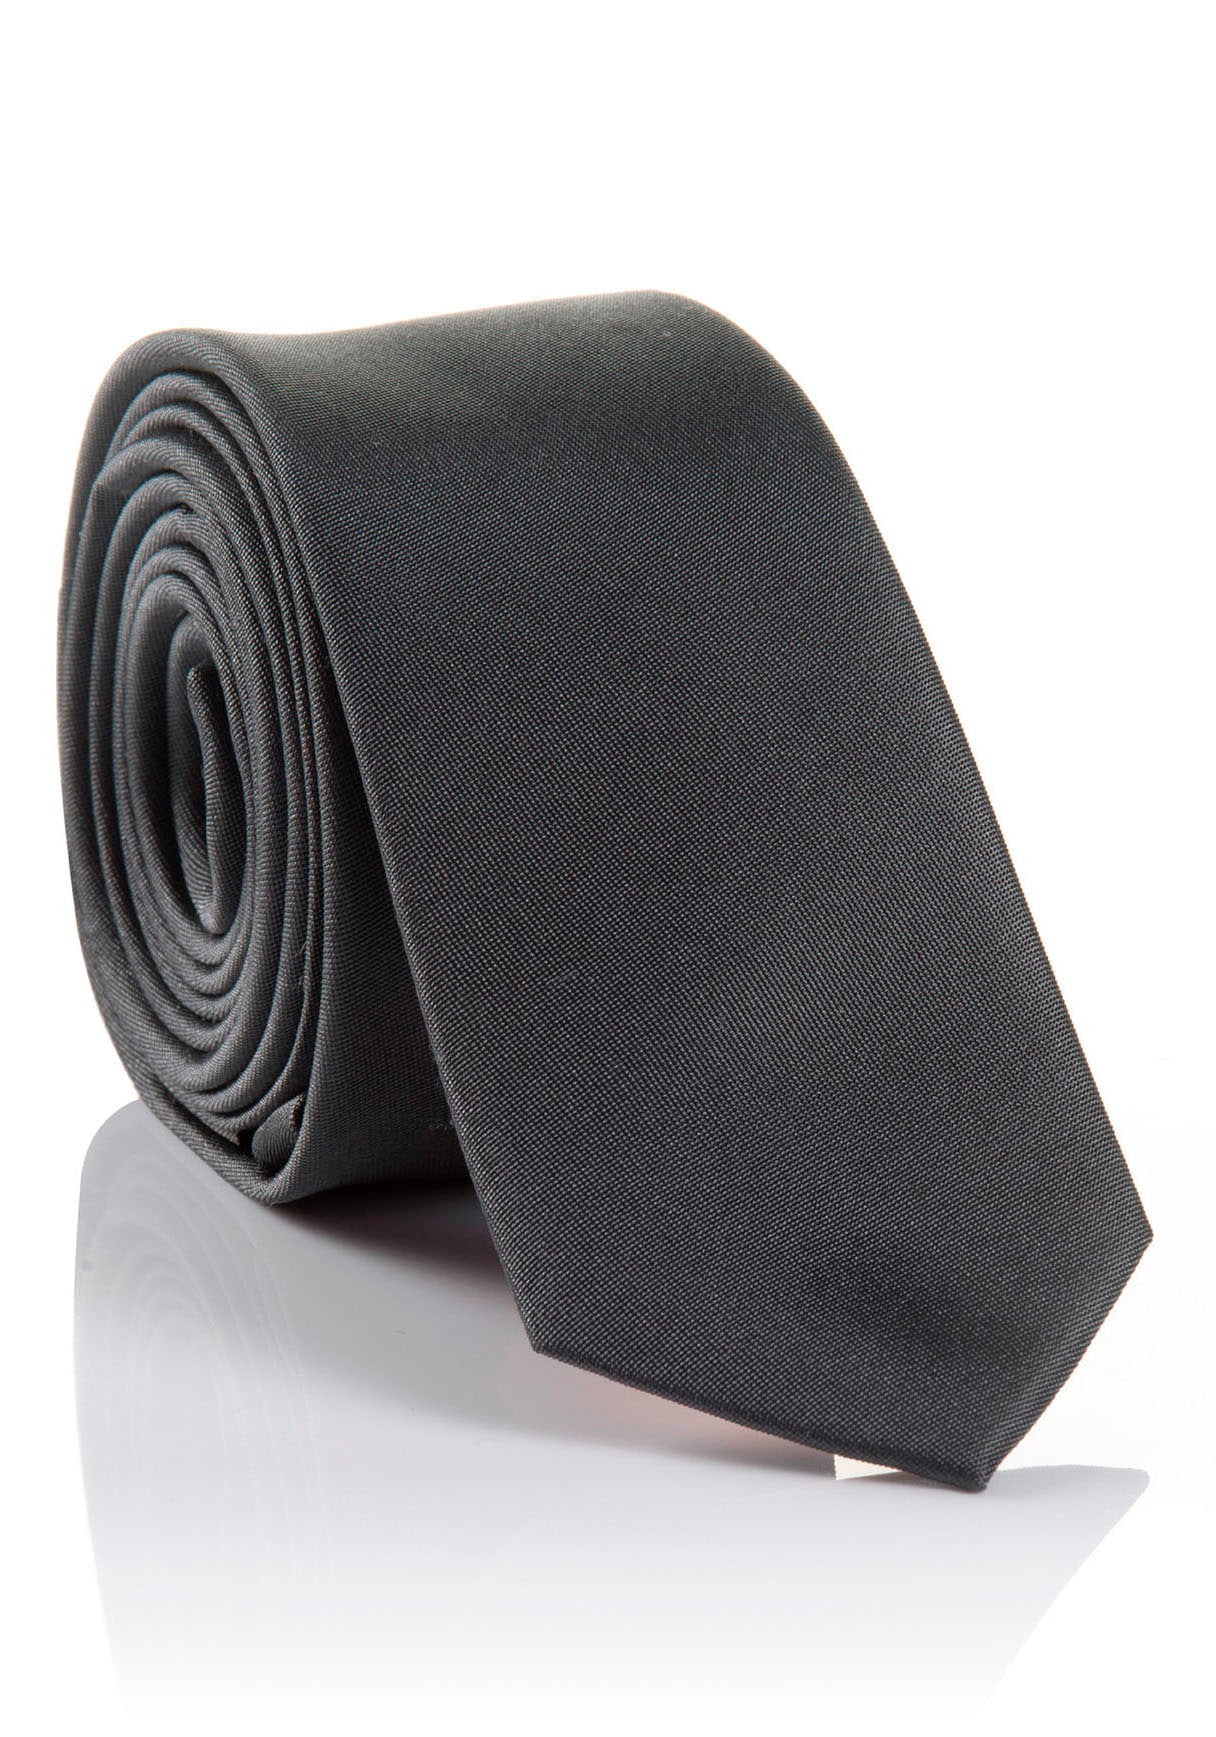 ➤ Krawatten - ohne versandkostenfrei kaufen Mindestbestellwert